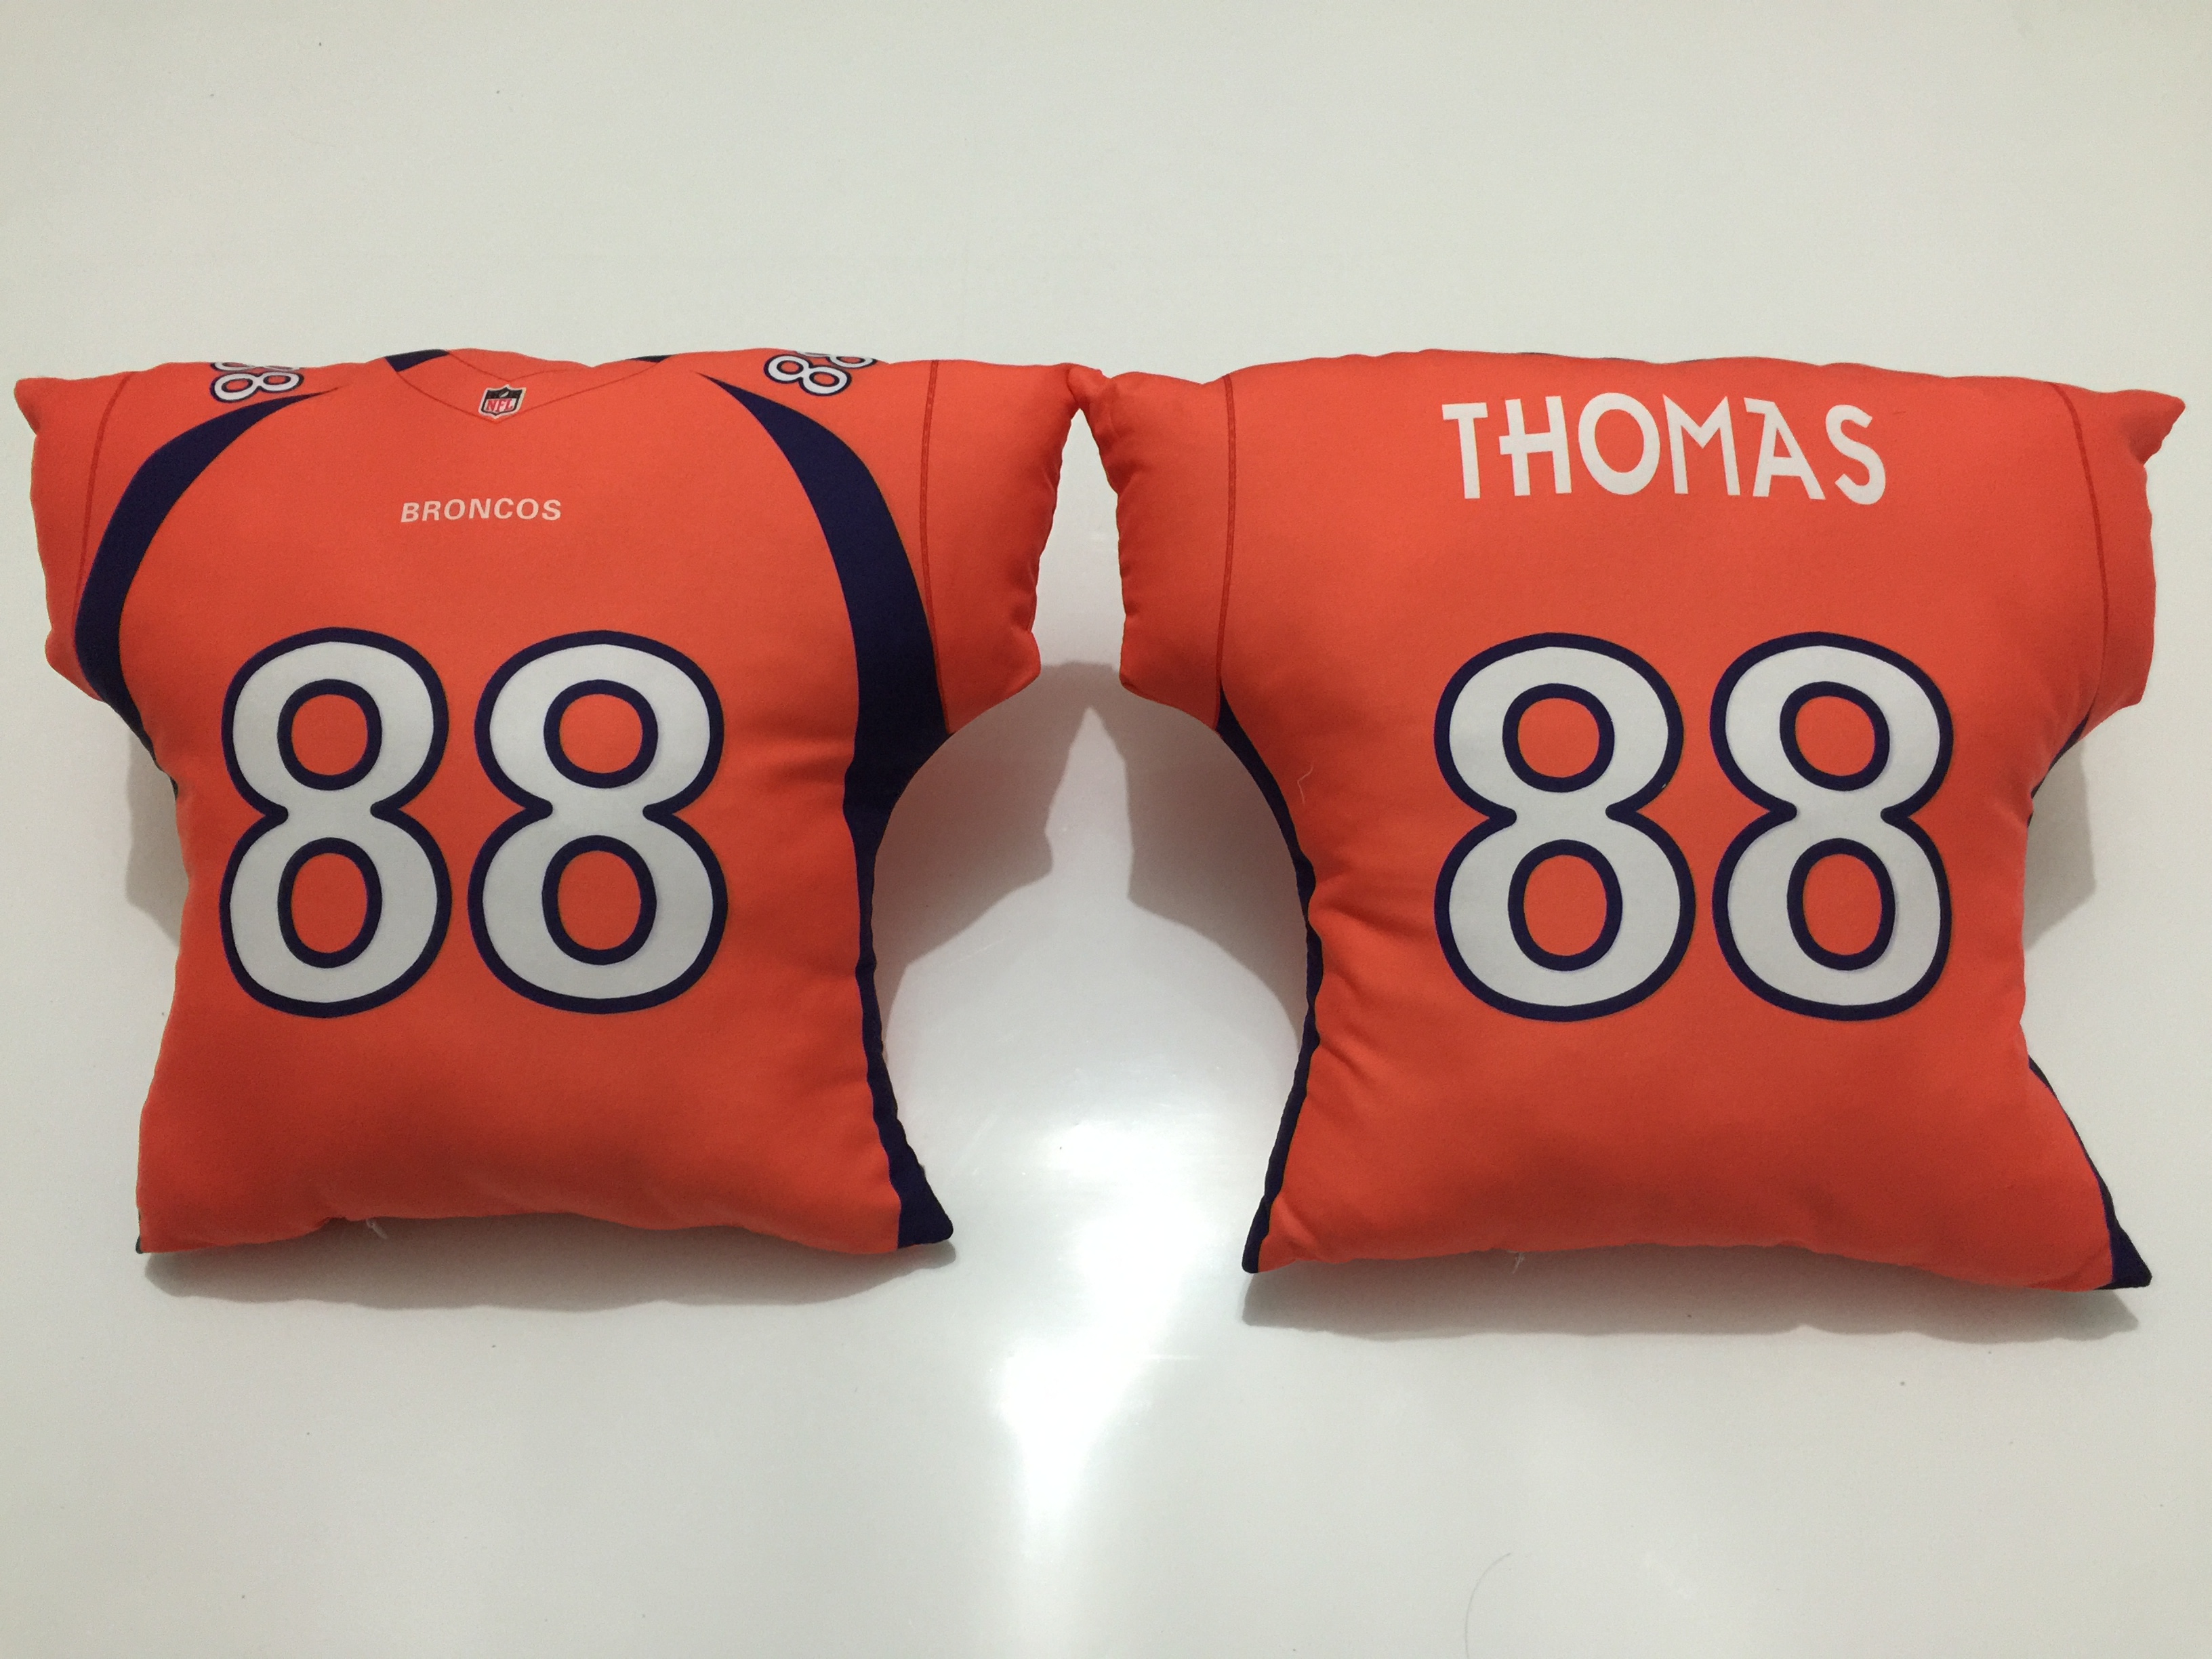 Denver Broncos 88 Demaryius Thomas Orange NFL Pillow - Click Image to Close